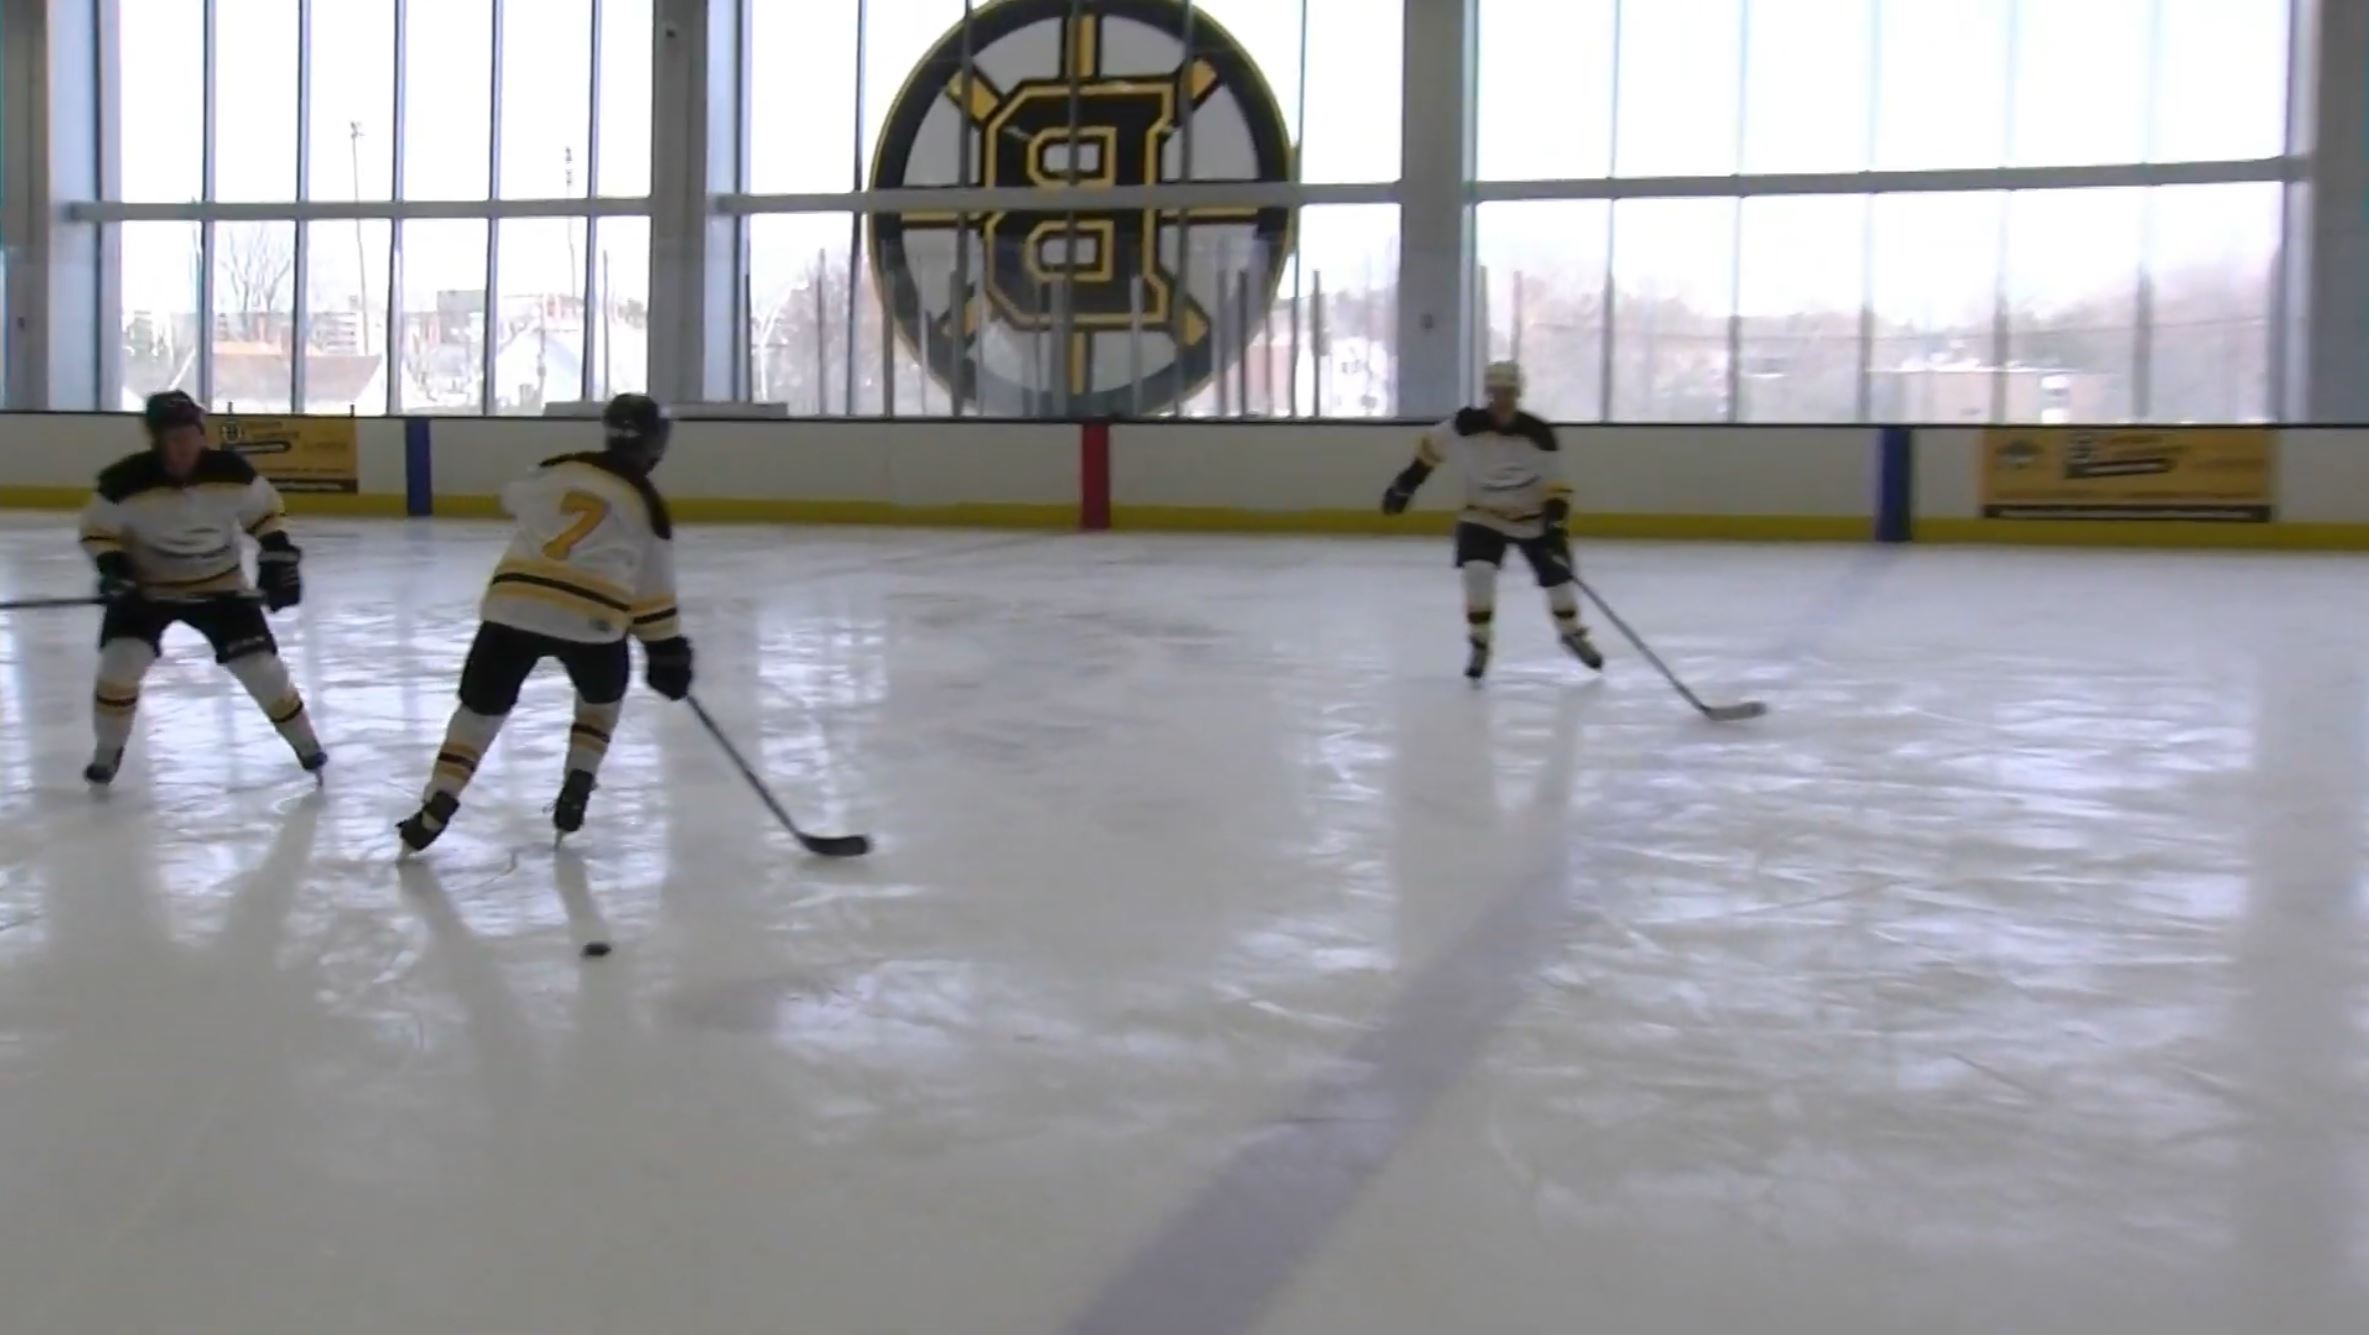 Usherwood skated its way onto NBC Sports Boston and NECN